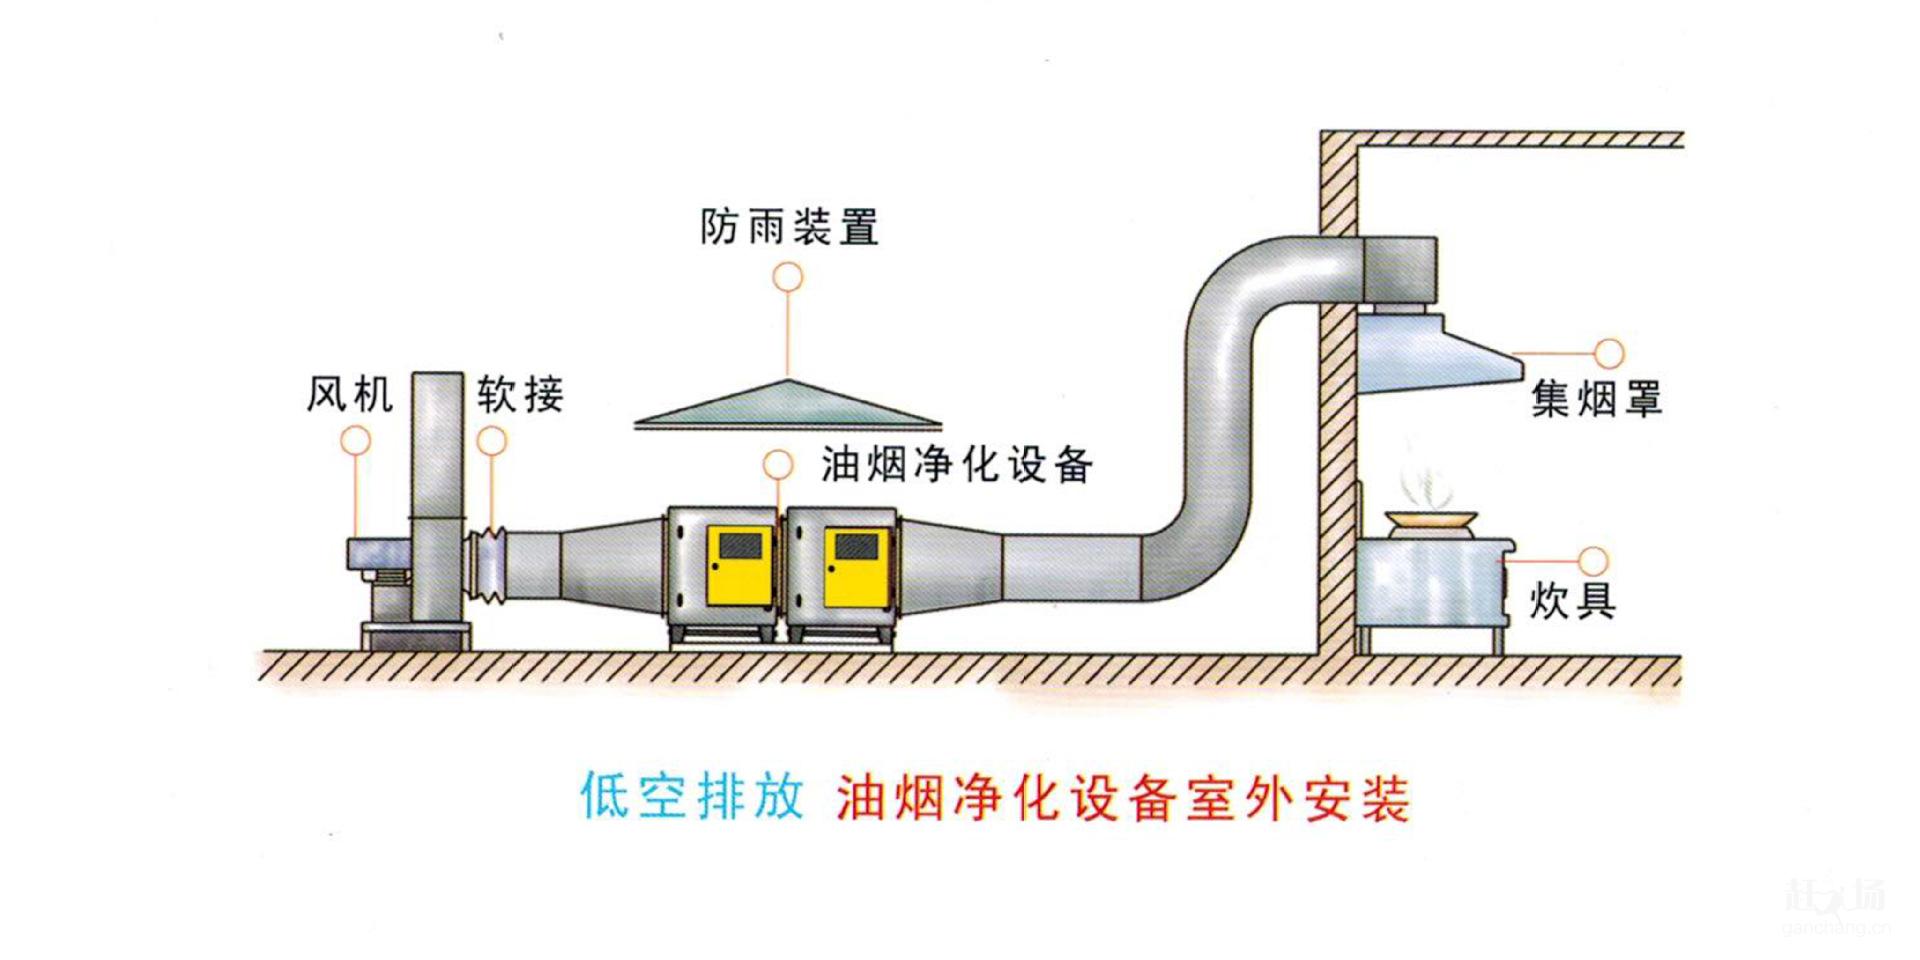 吉州区文山饭店厨房油烟净化器安装工厂厨房通风方案设计